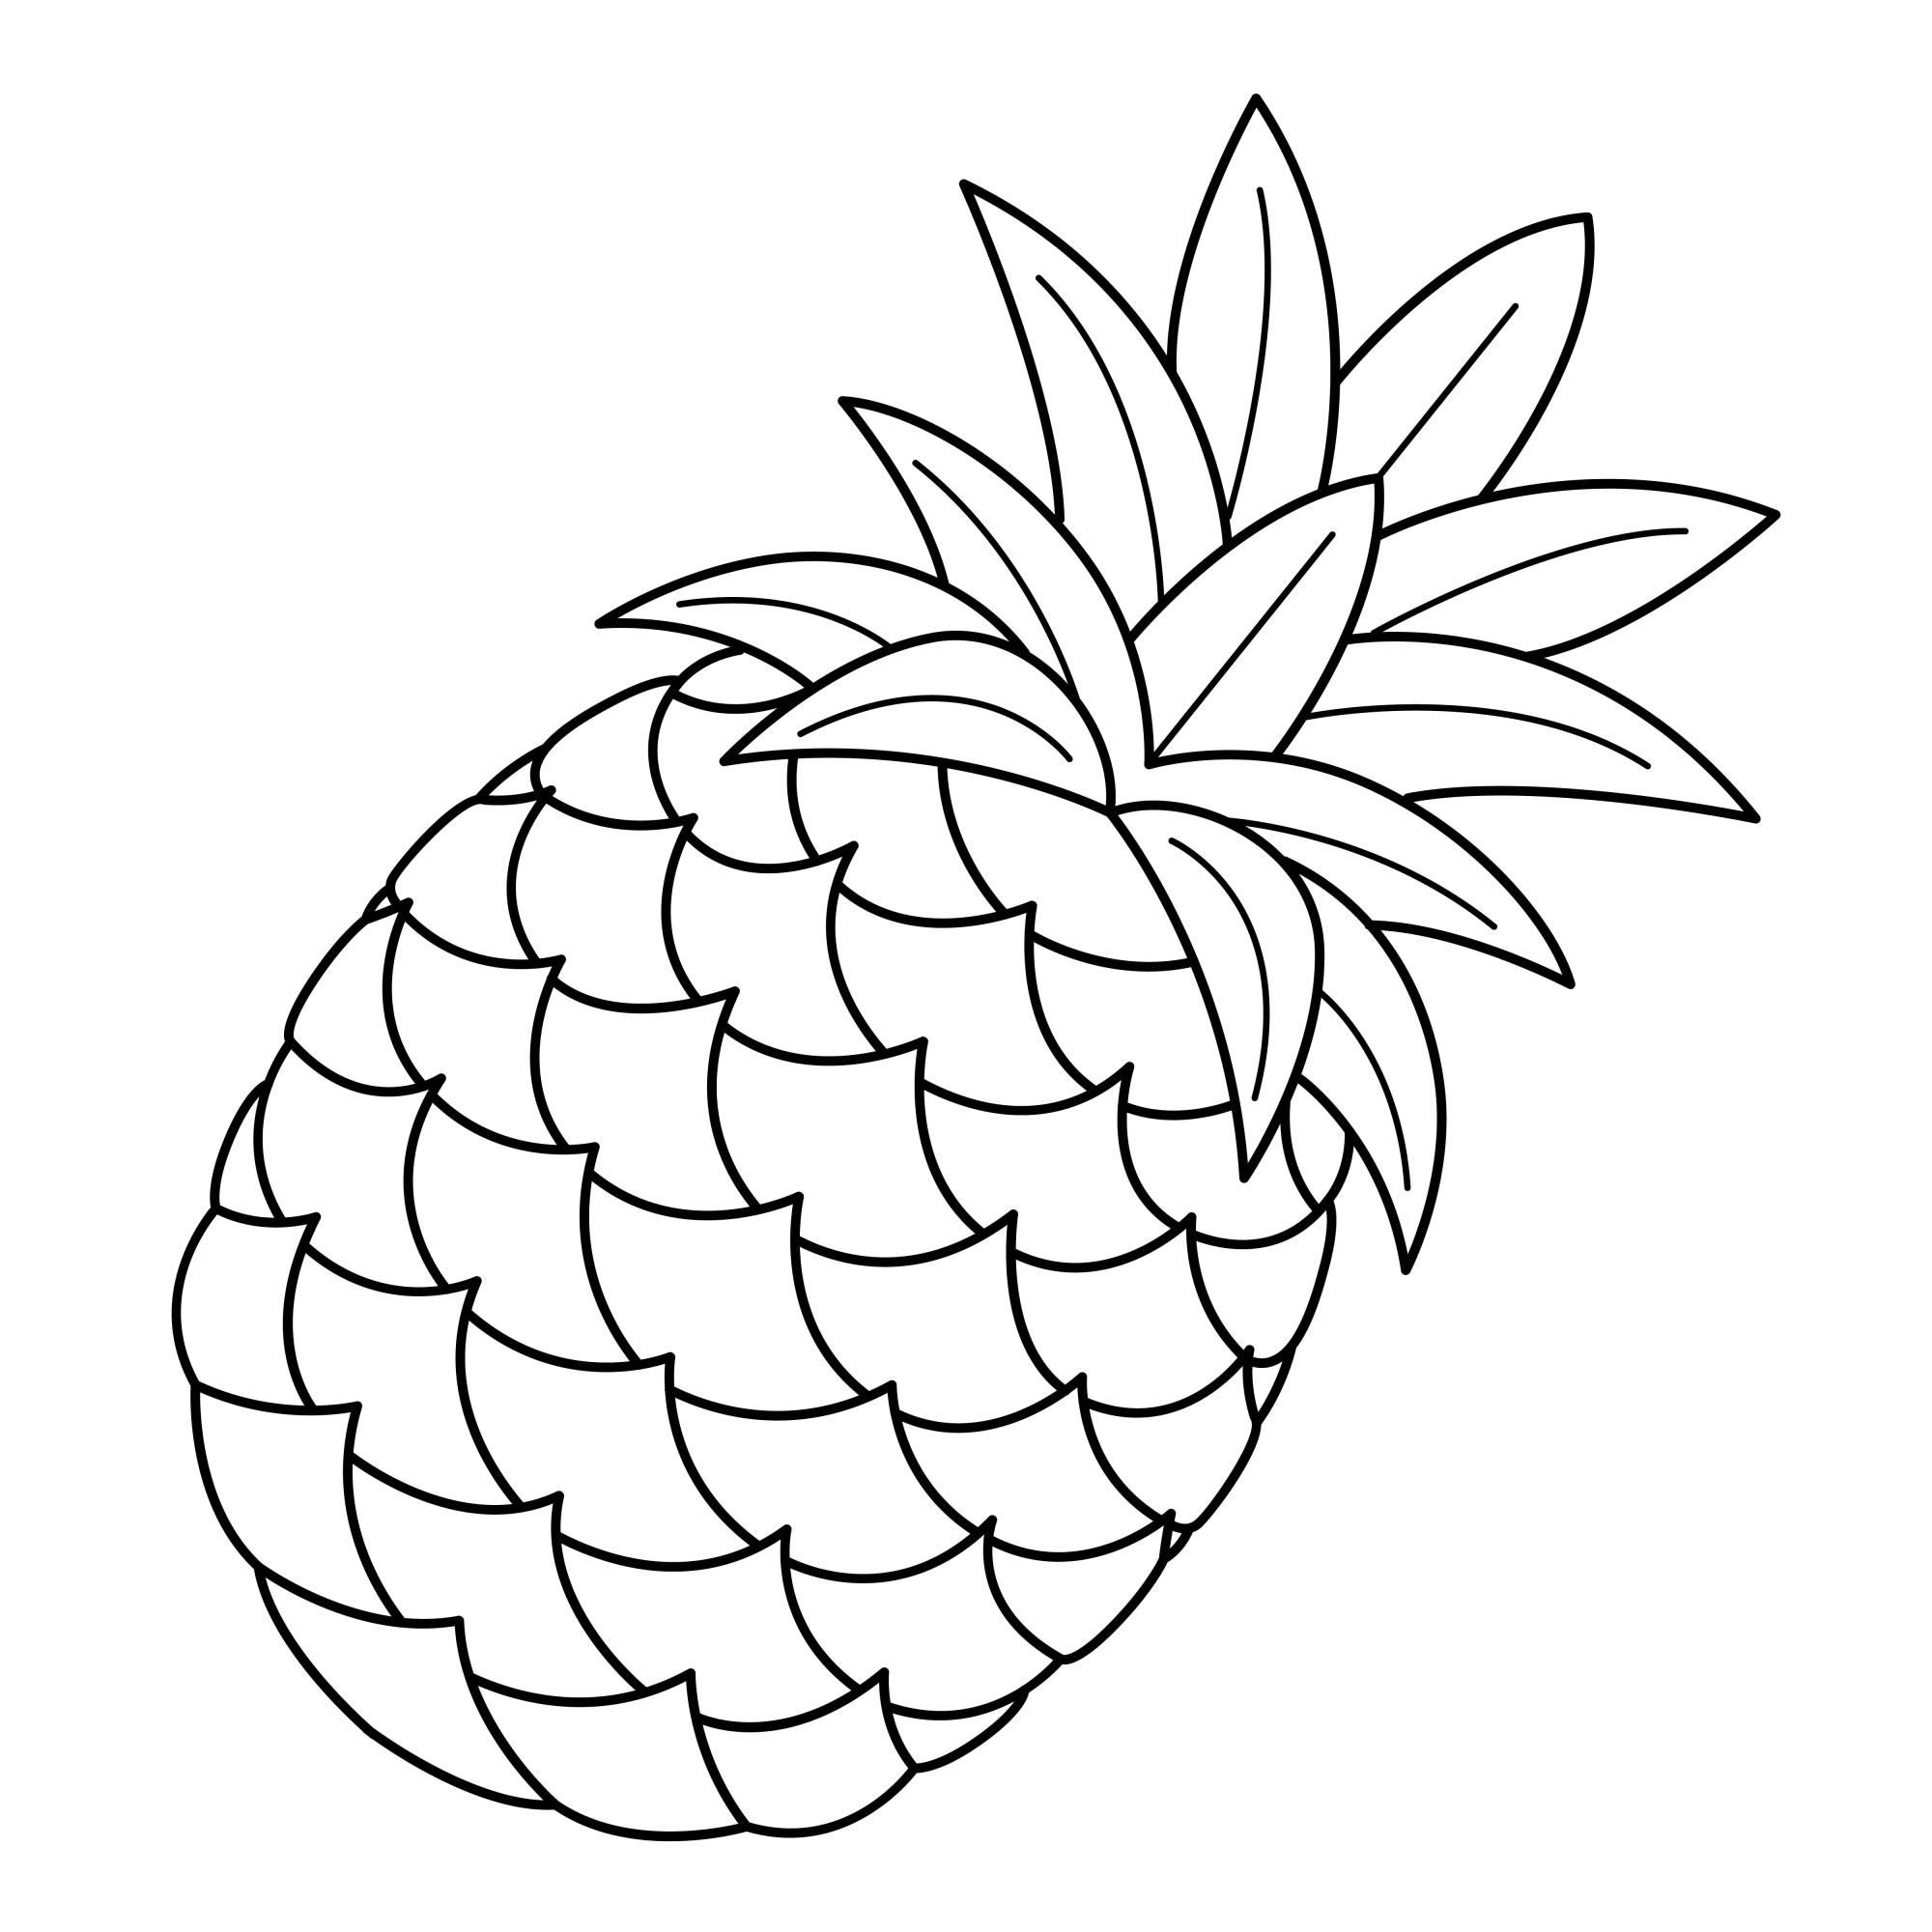 Раскраска для детей: сладкий ананас